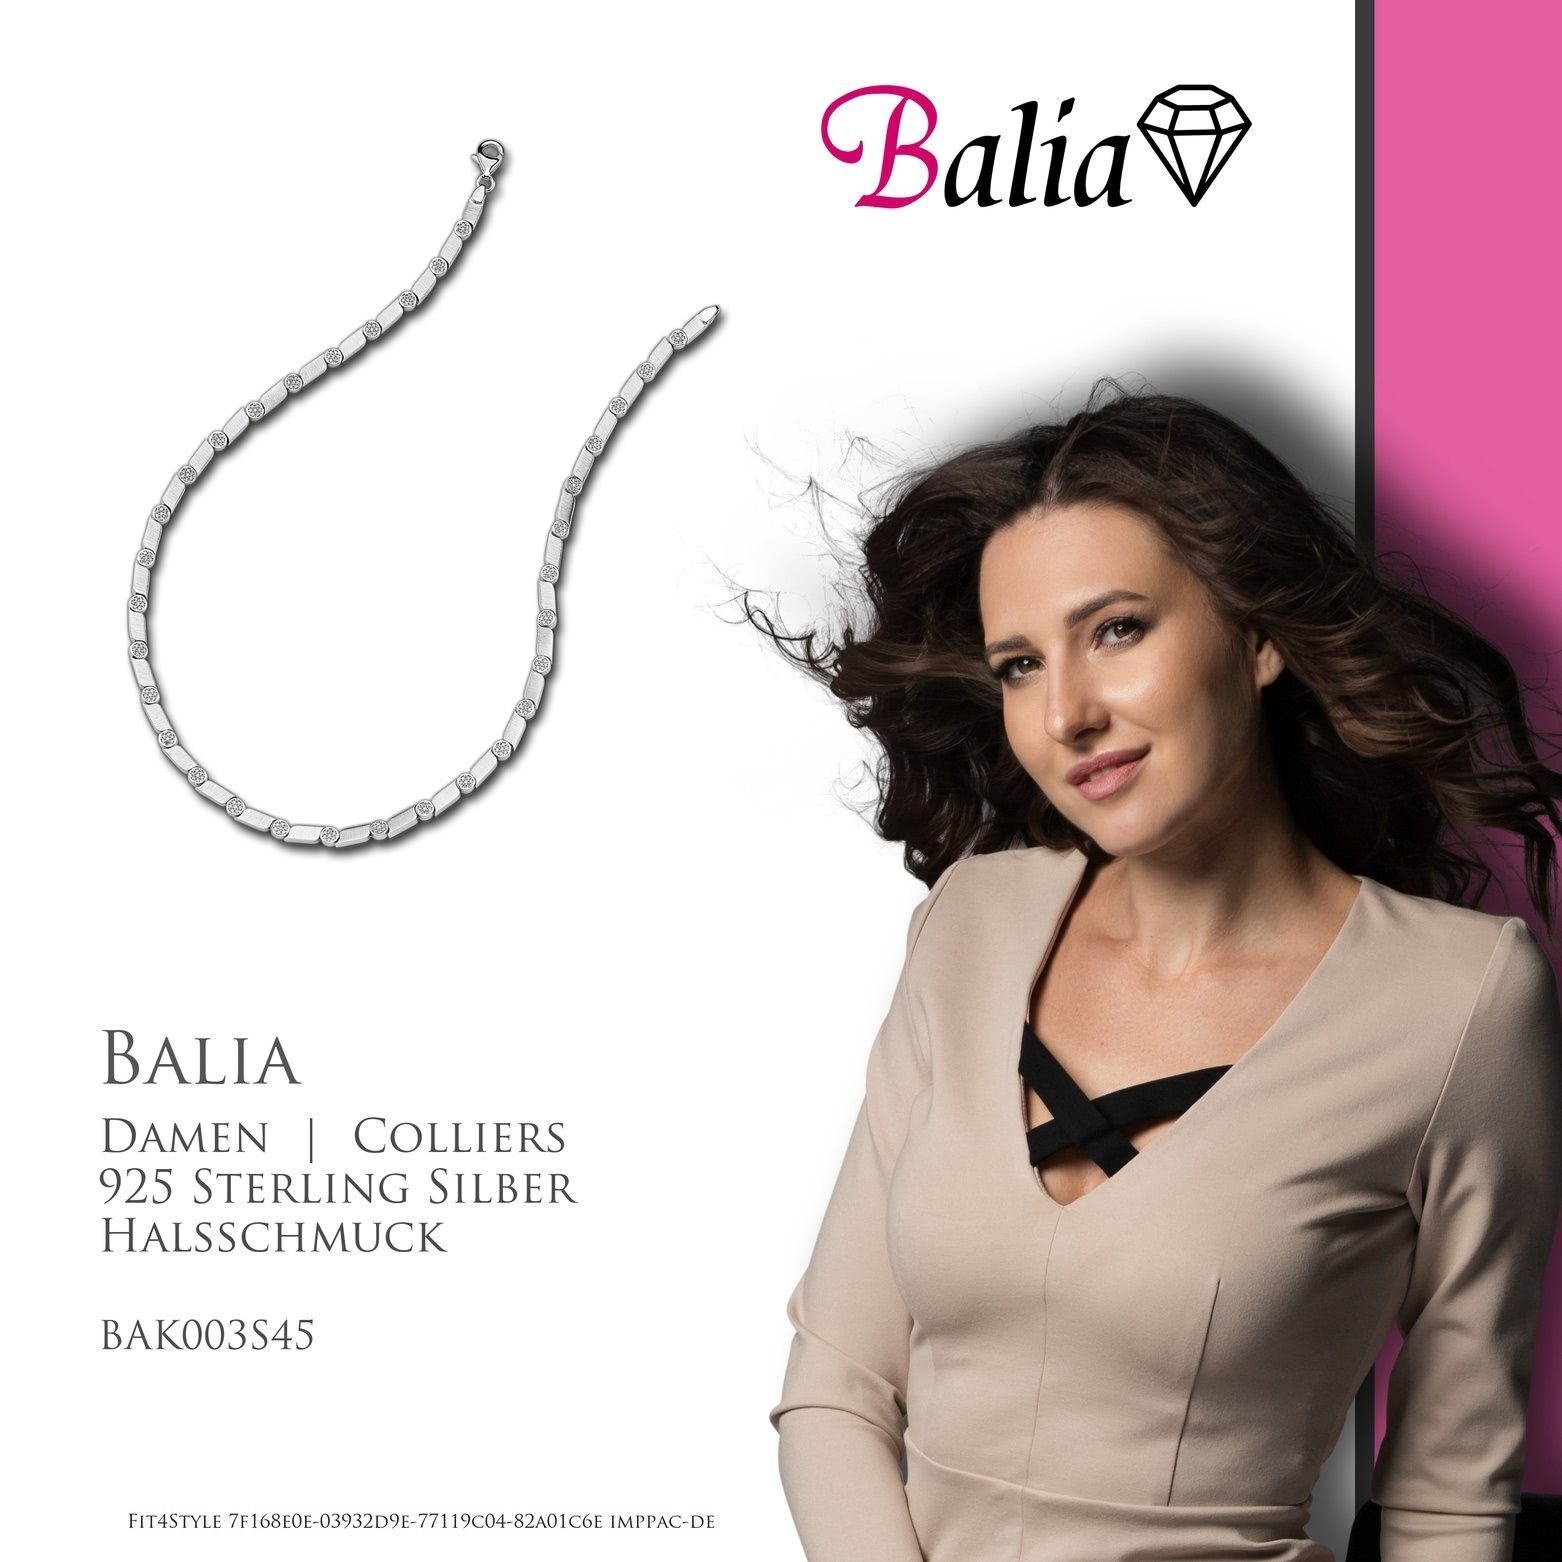 Collier Balia Sterling silber Silber, matt-glanz Colliers, Fantasie Balia Damen Halskette 925 für Farbe: (Collier), Damen Halsketten